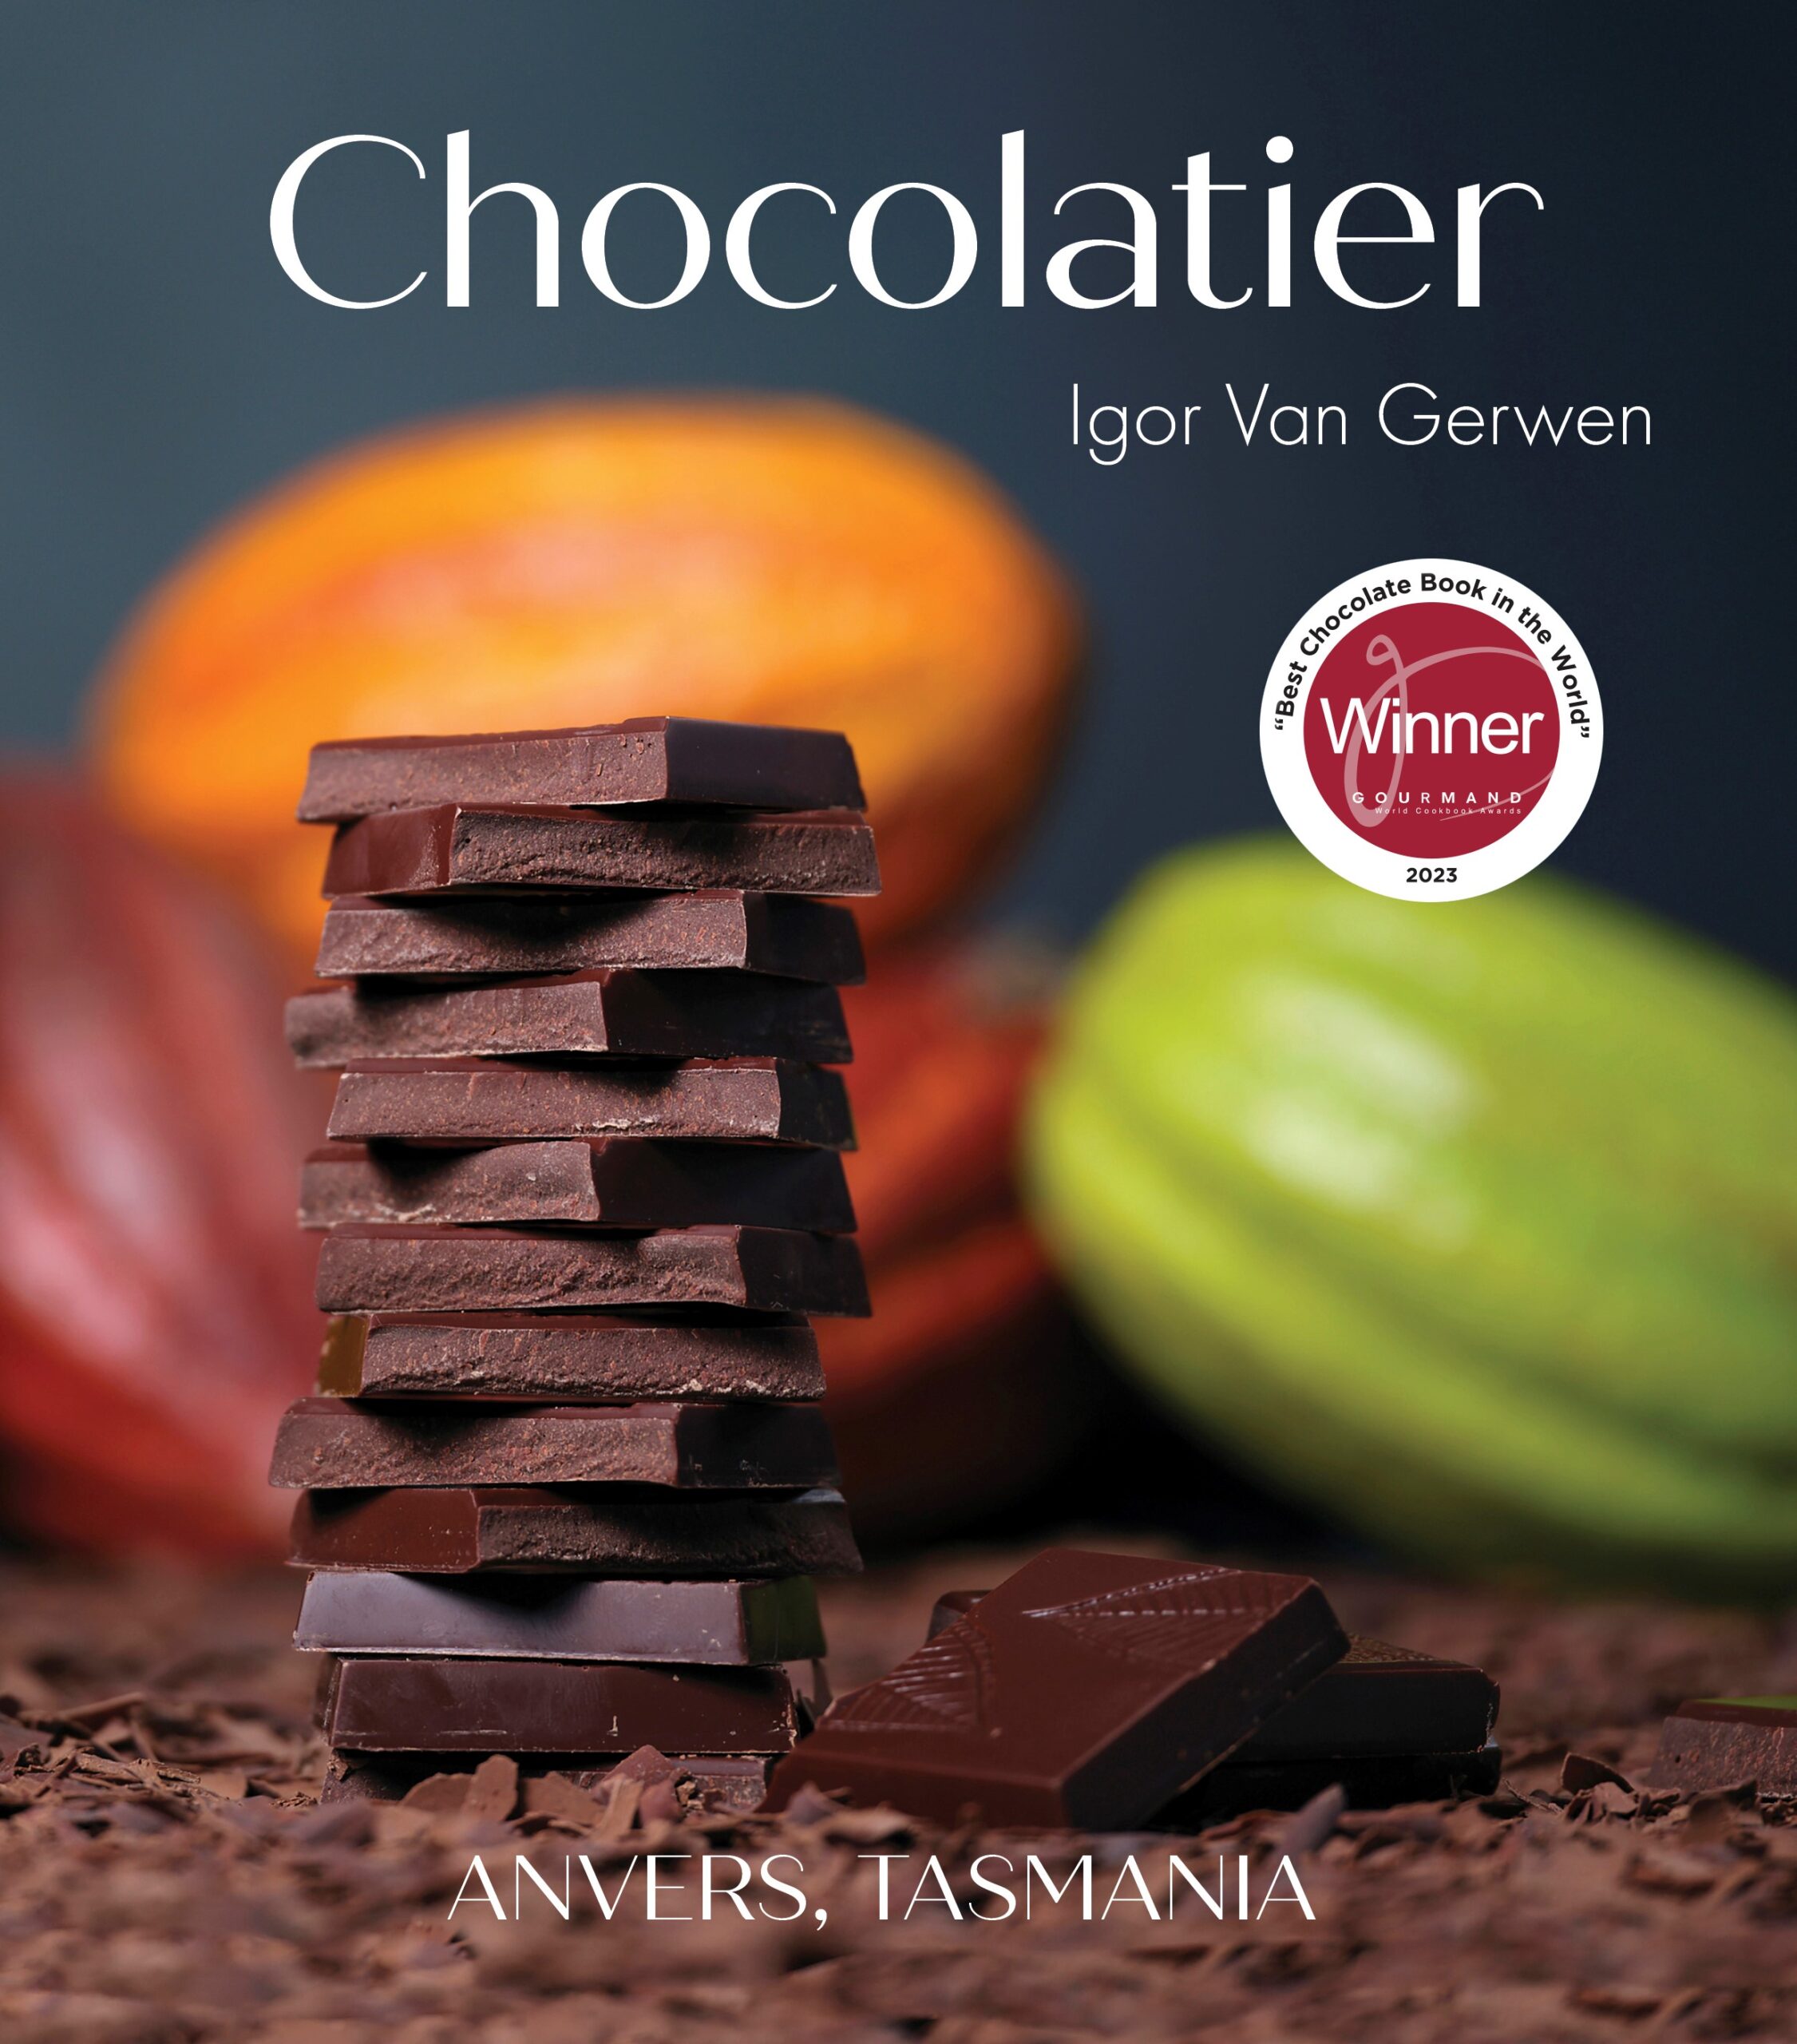 Chocolatier Igor Van Gerwen | Anvers Tasmania